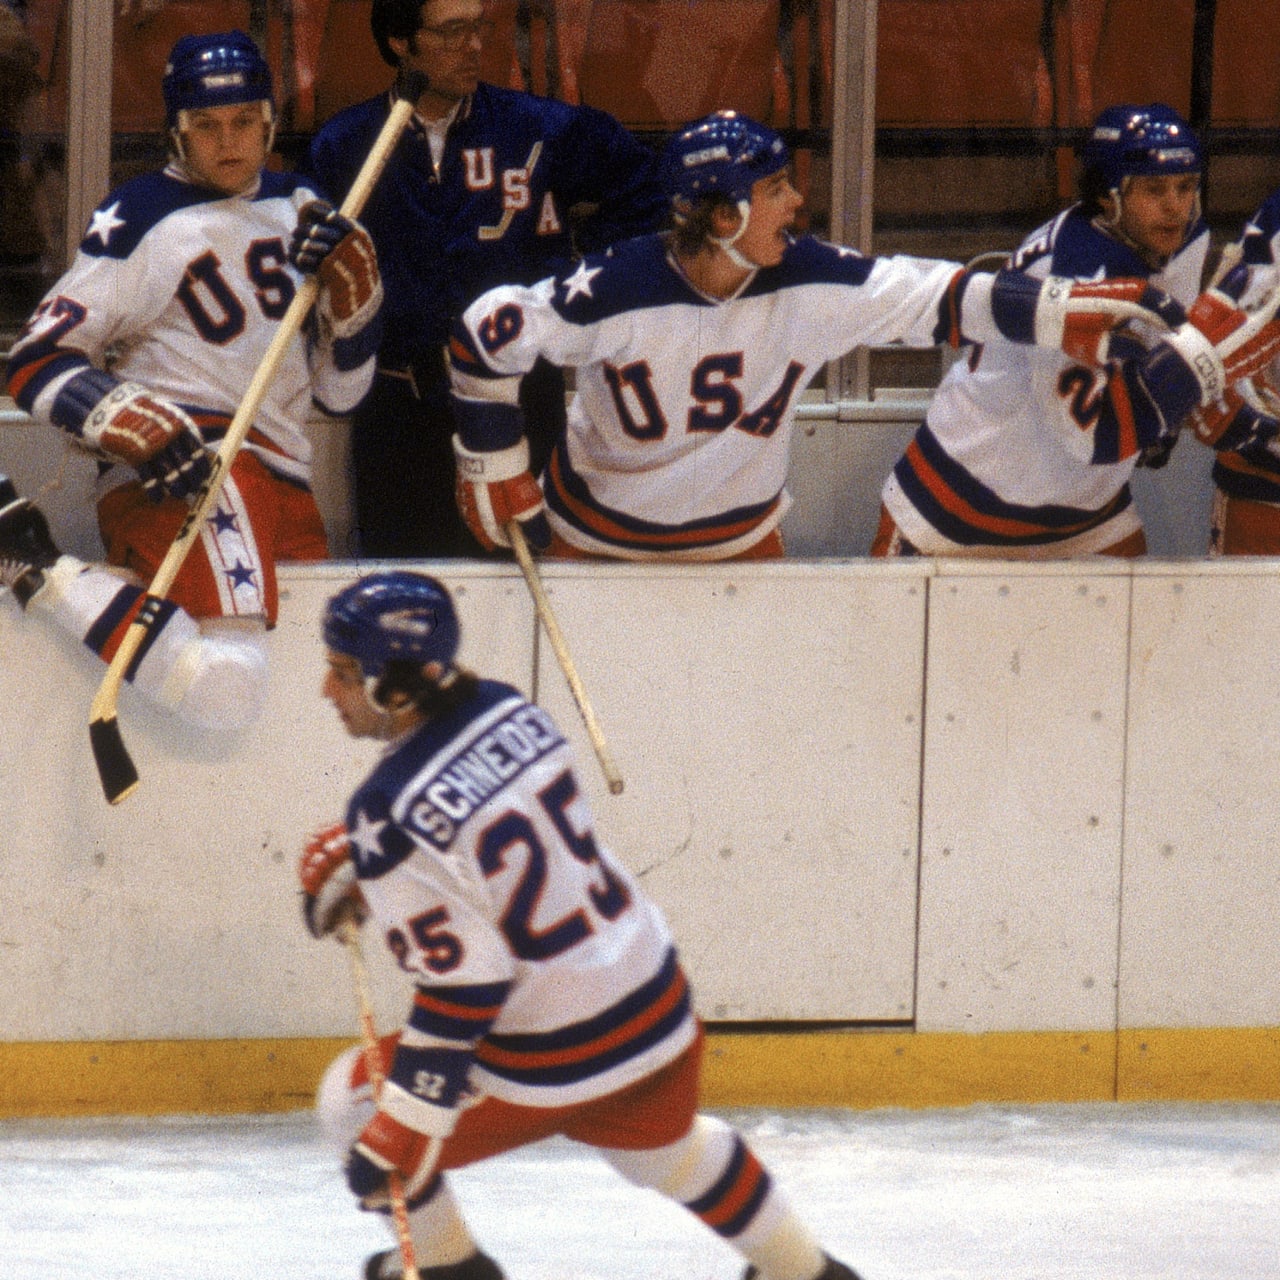 氷上の奇跡 を生み出した1980年のアメリカアイスホッケーチーム